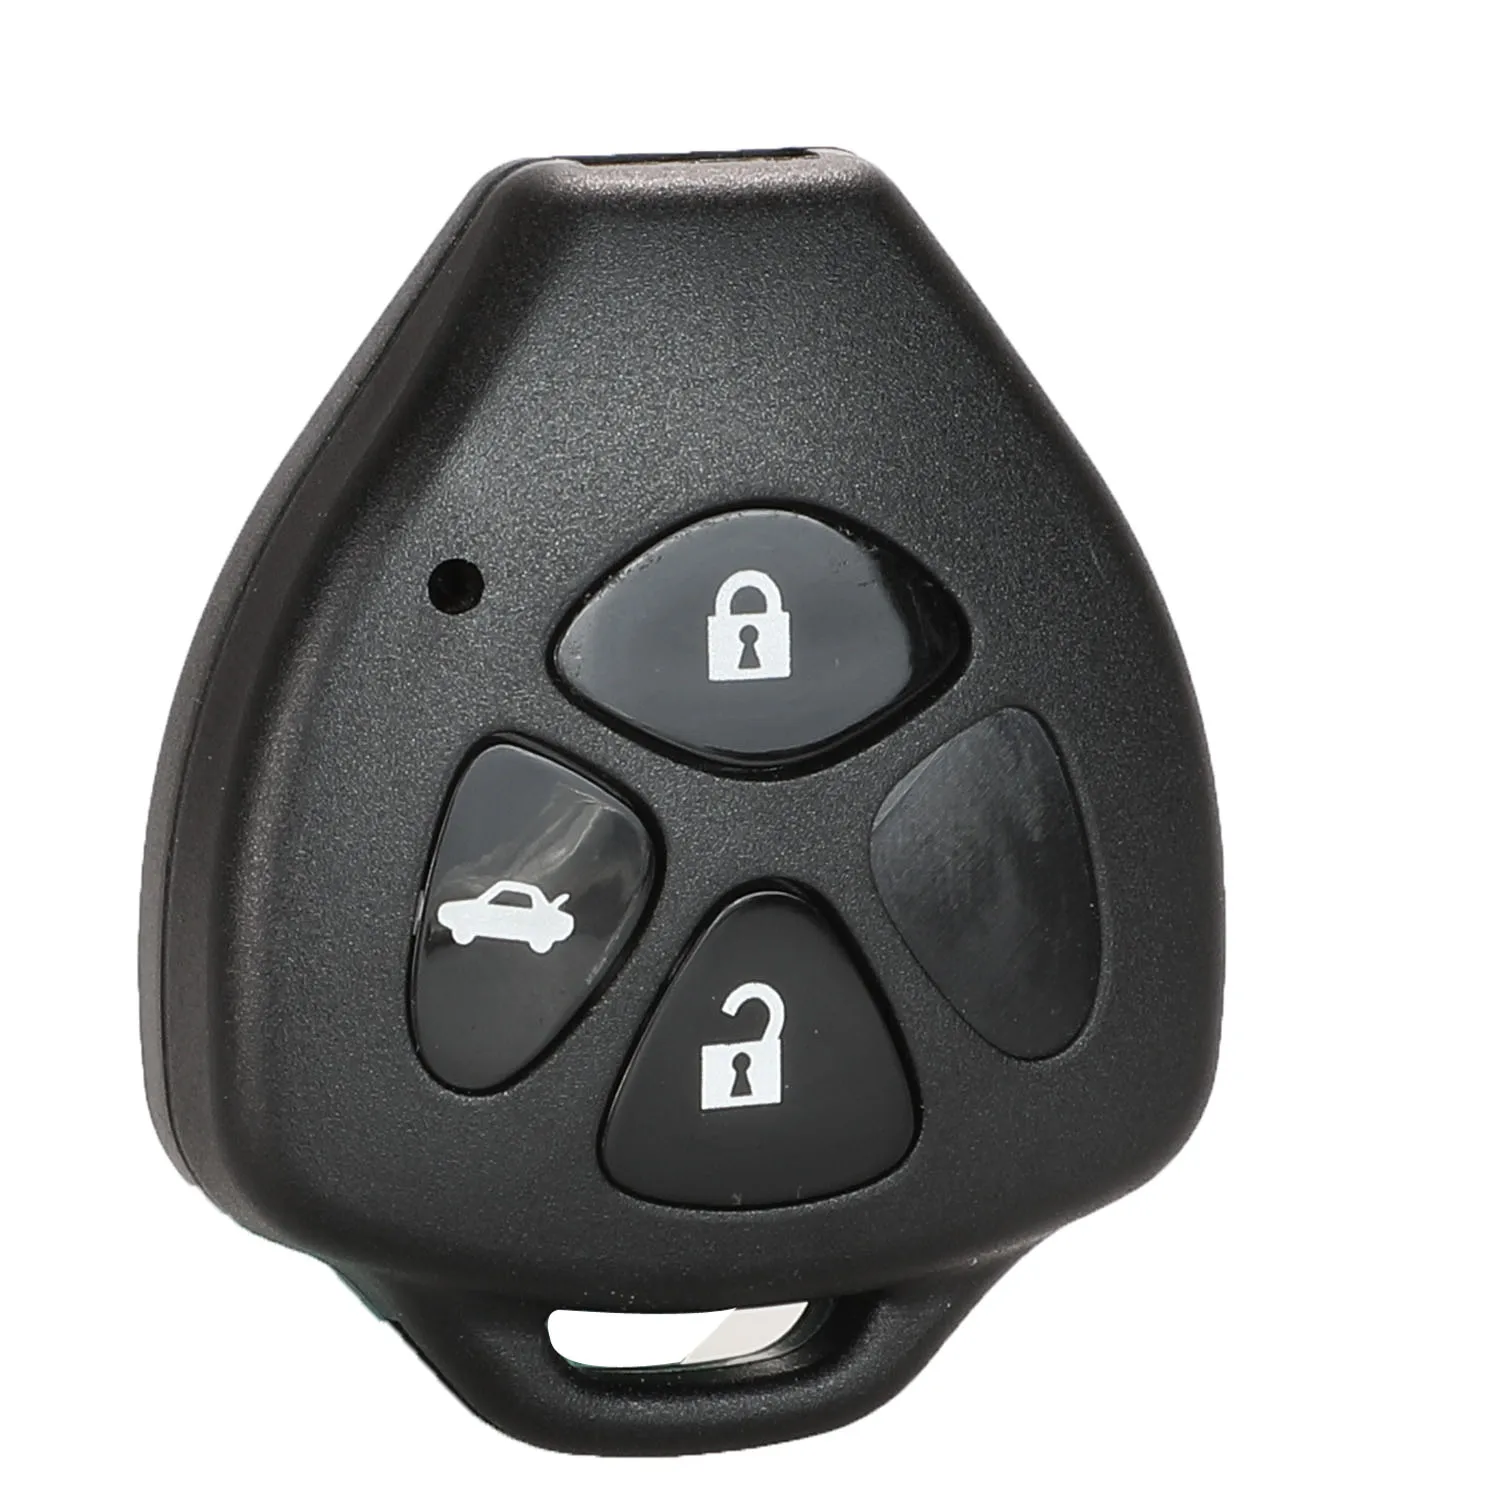 Jingyuqin 2/3/4 кнопки корпус автомобильного ключа дистанционного управления брелок для Toyota Camry Corolla Avalon Venza Reiz RAV4 Корона не лезвие ключ чехол - Количество кнопок: 3 Buttons